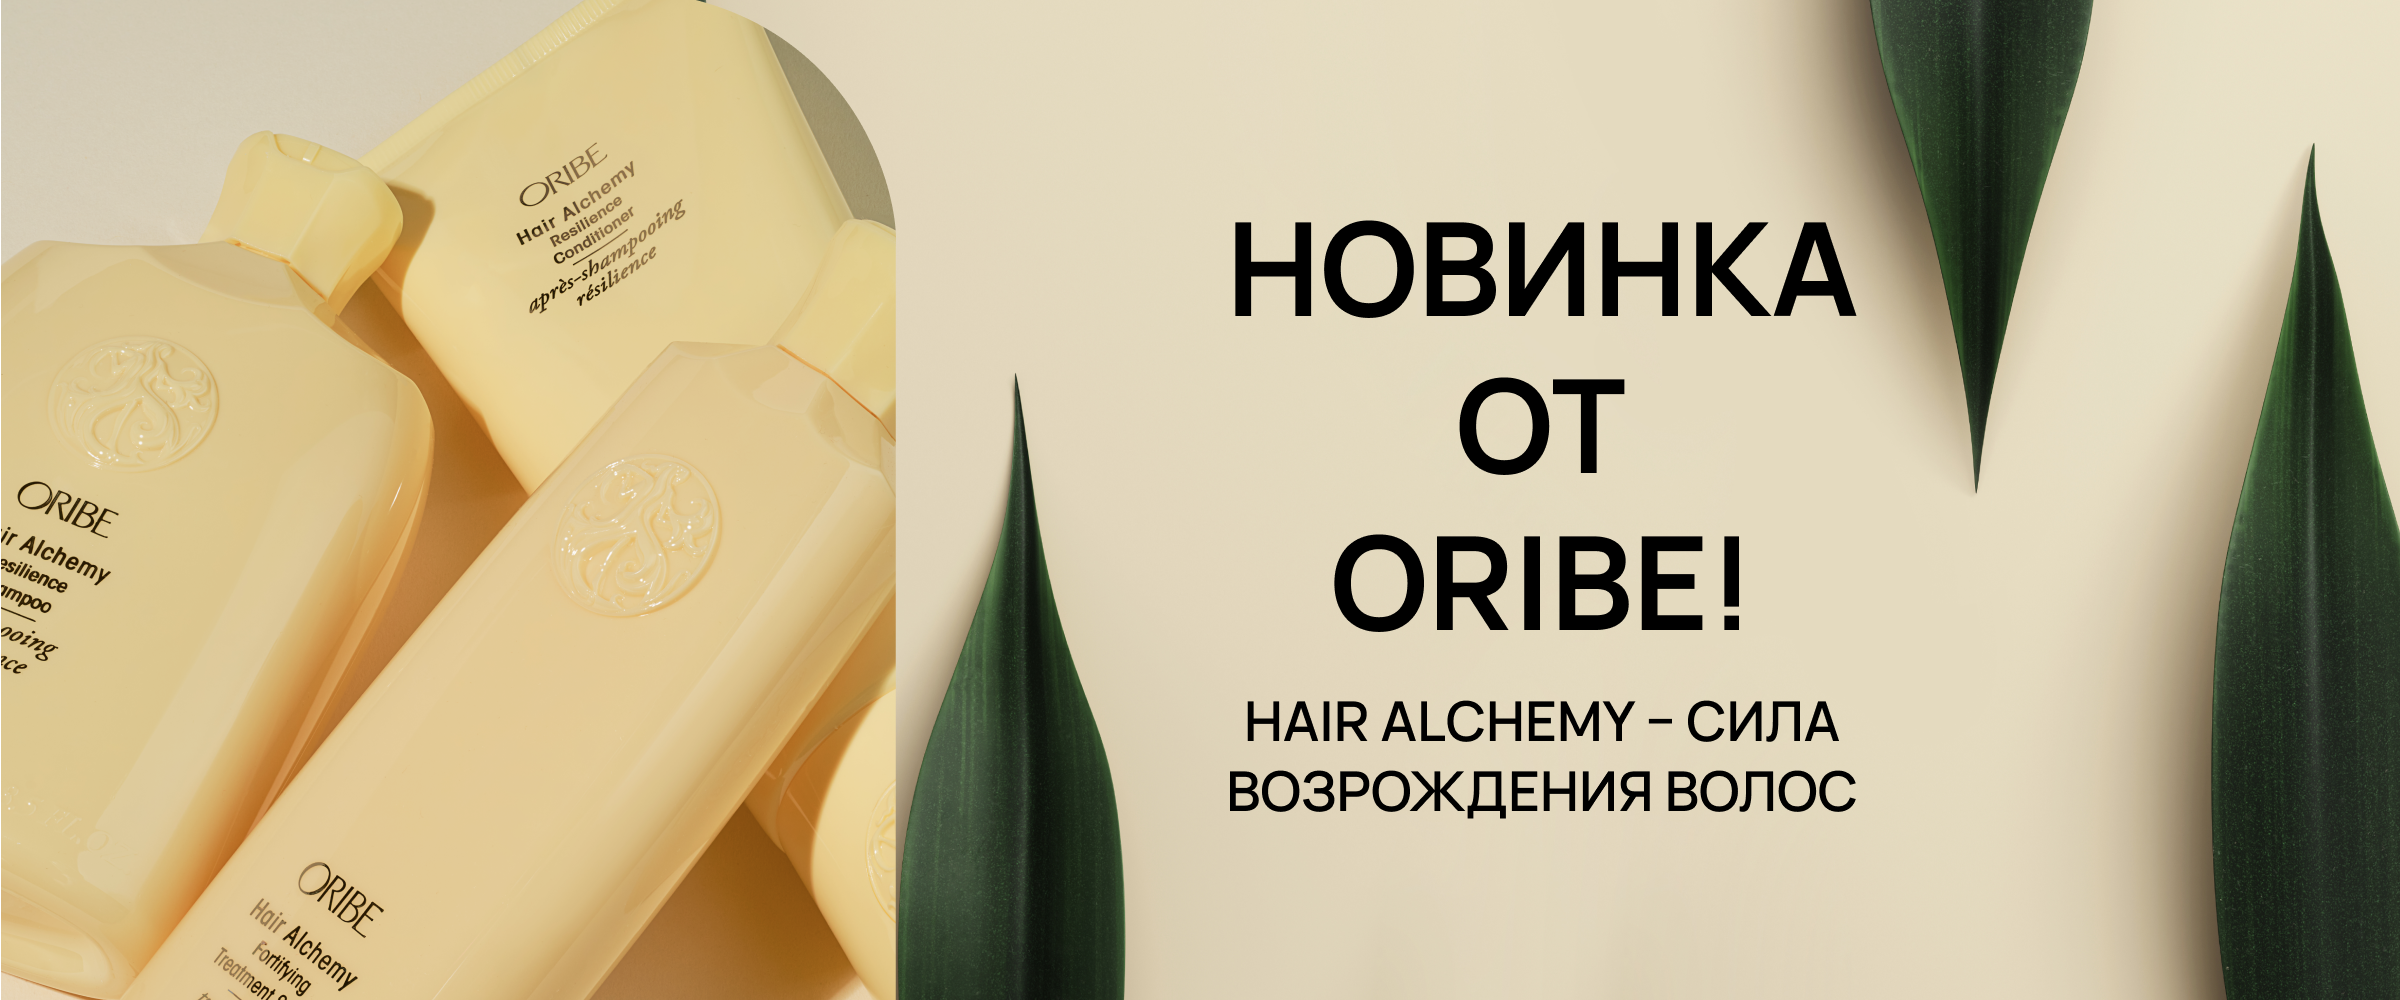 Oribe новинки - интернет-магазин профессиональной косметики Spadream, изображение 42683